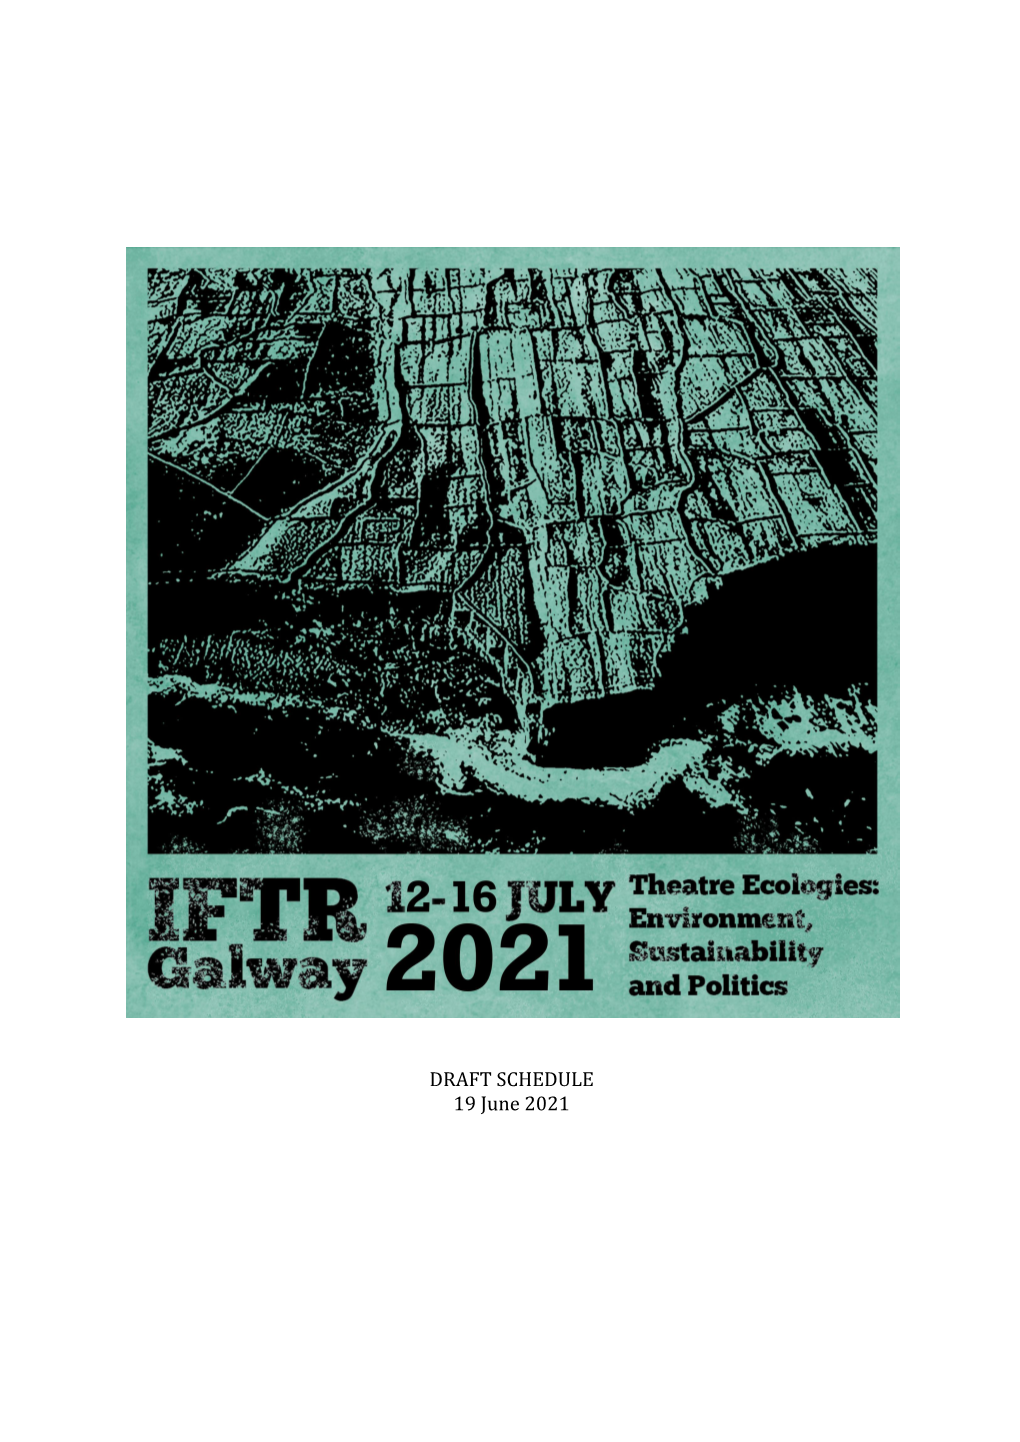 IFTR Schedule 21 June 2021 1609